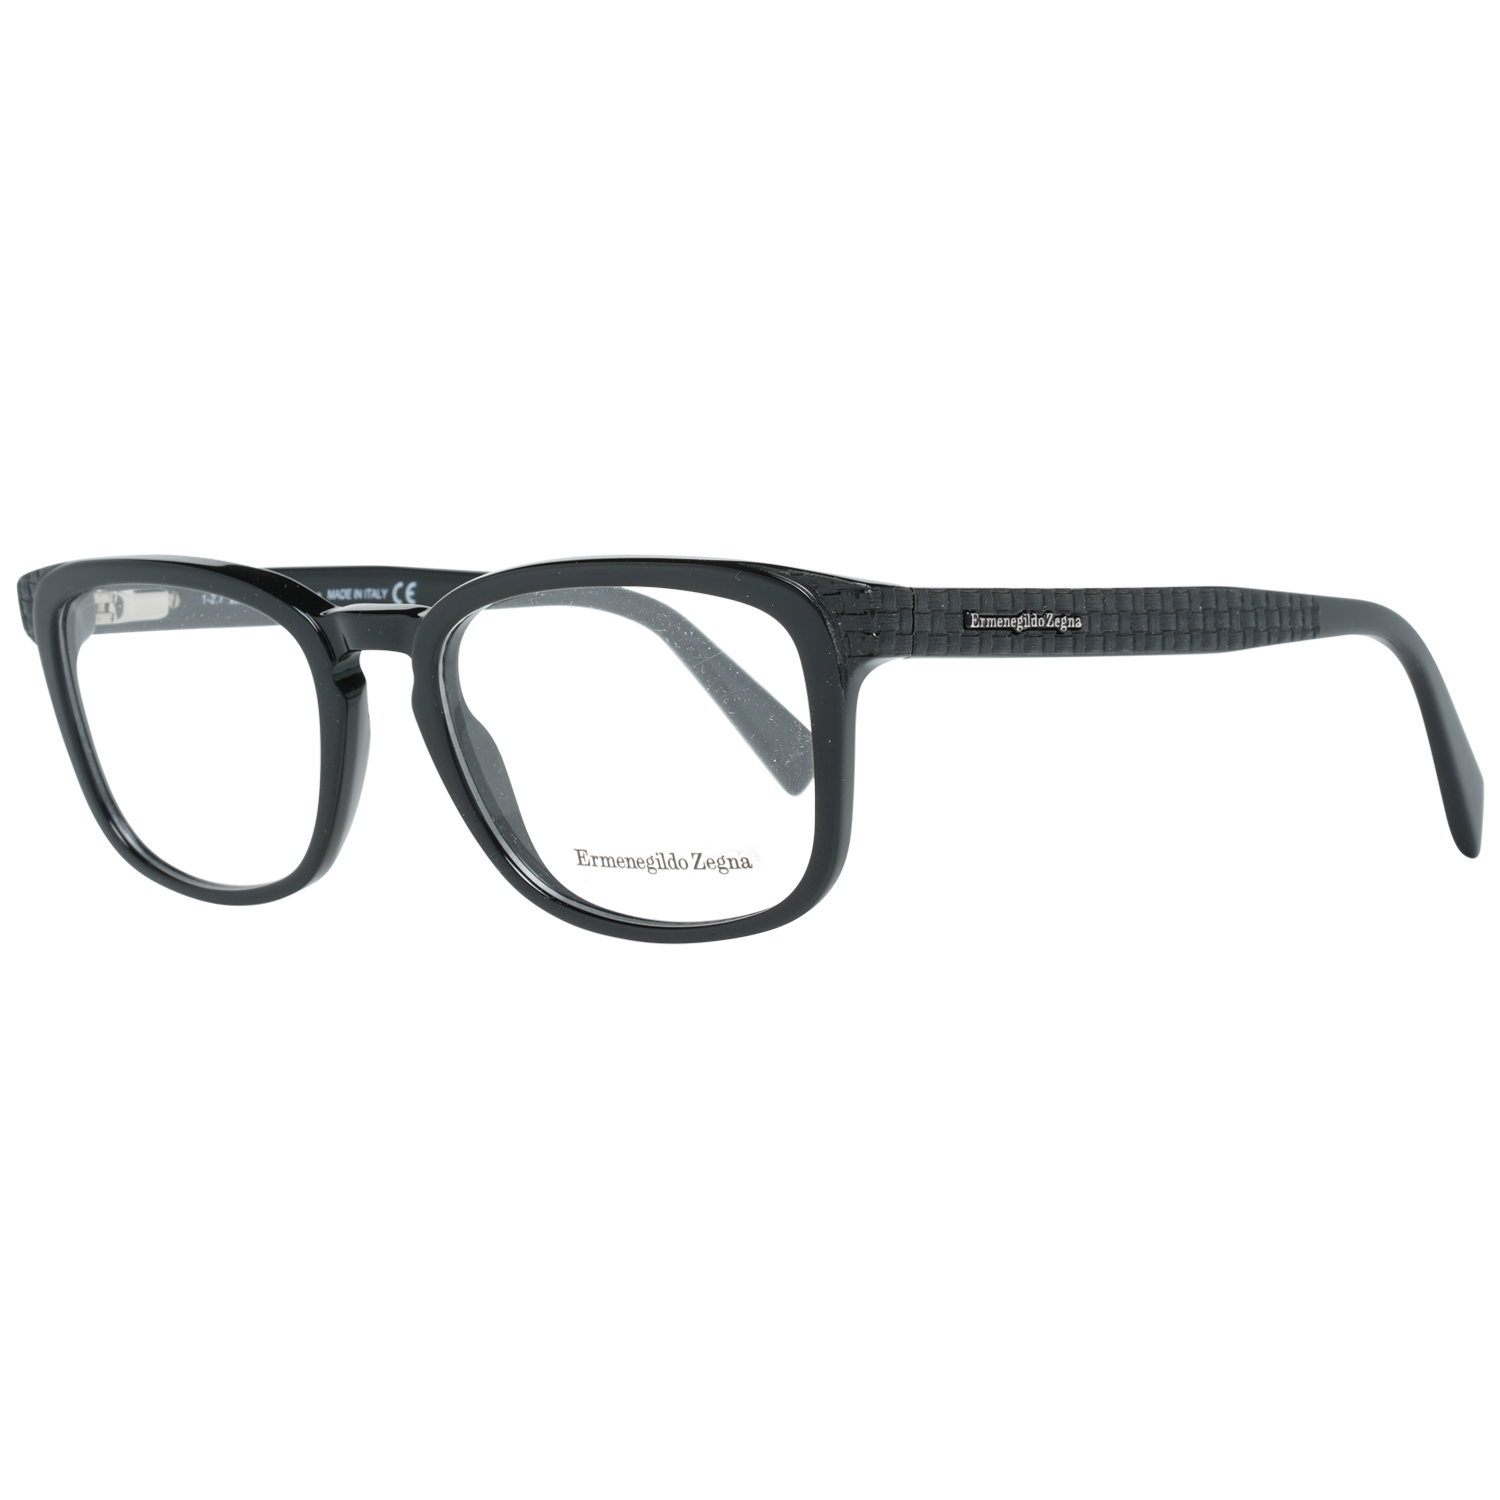 Ermenegildo Zegna Frames Ermenegildo Zegna Glasses Optical Frame EZ5109 001 52 Eyeglasses Eyewear UK USA Australia 